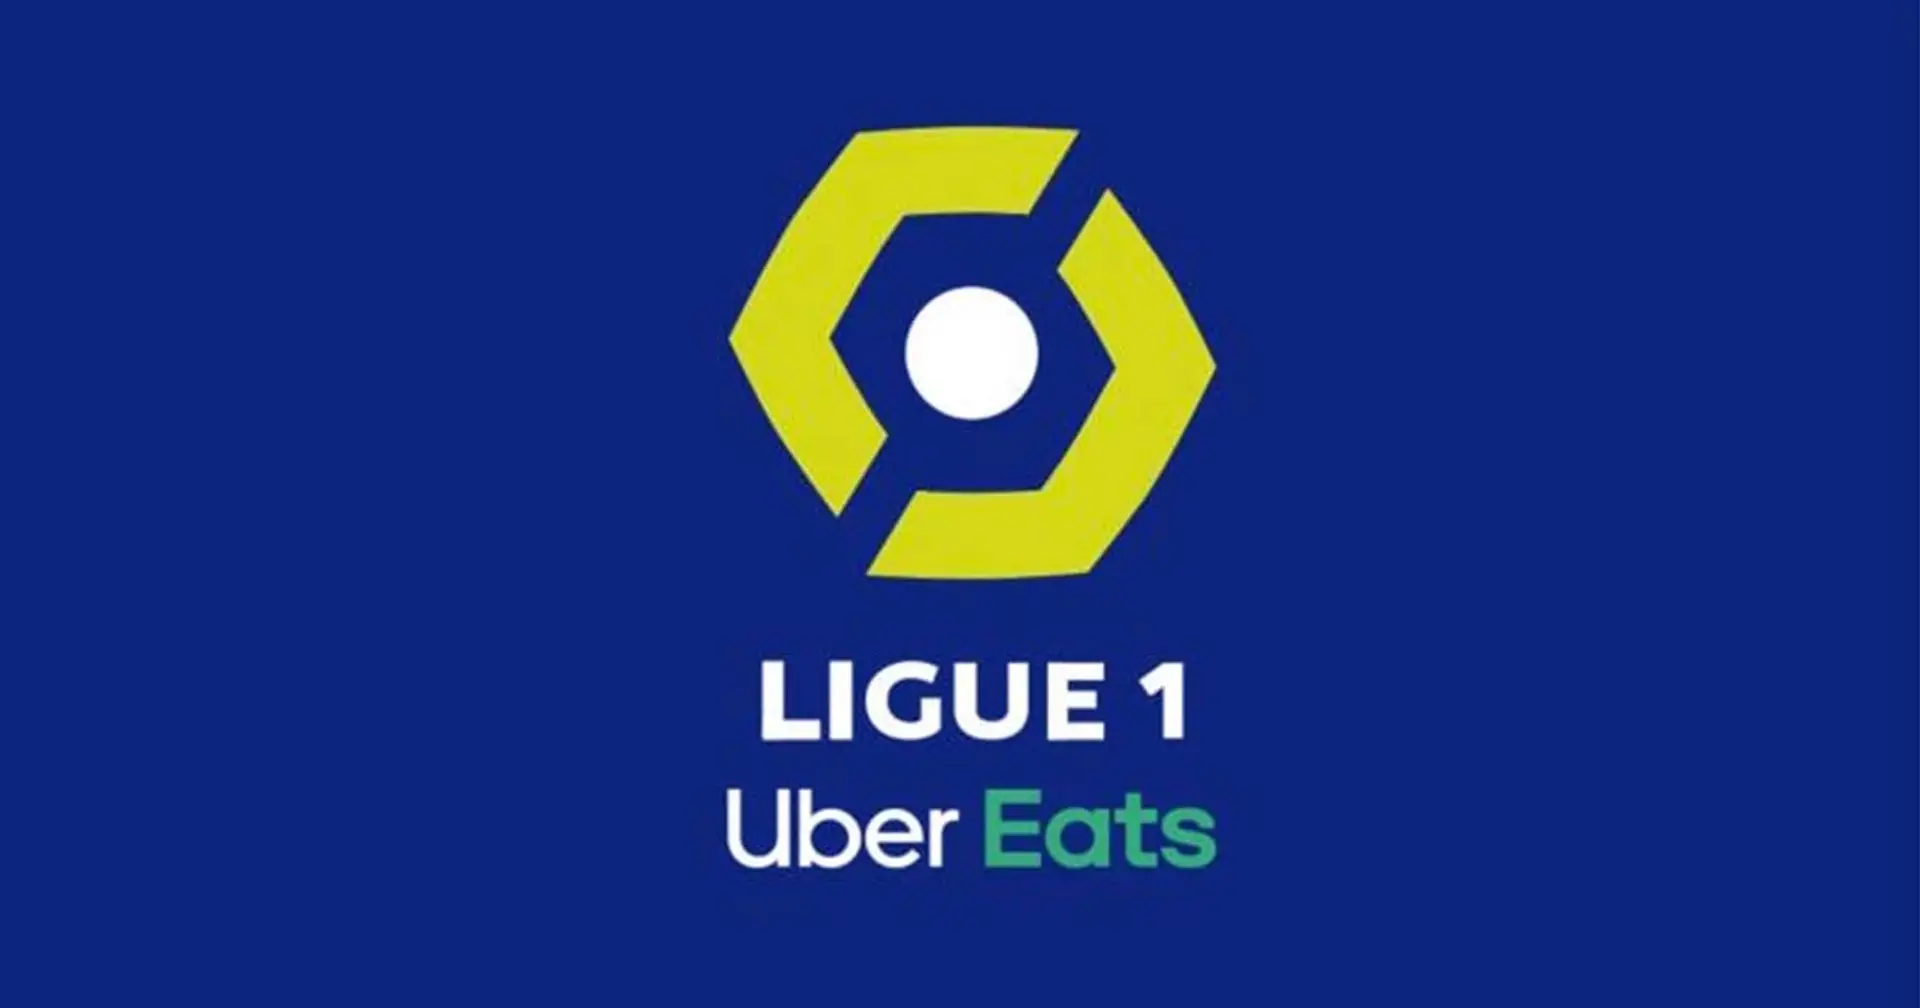 Amiens dévoile accidentellement le nouveau logo de la Ligue 1 Uber Eats